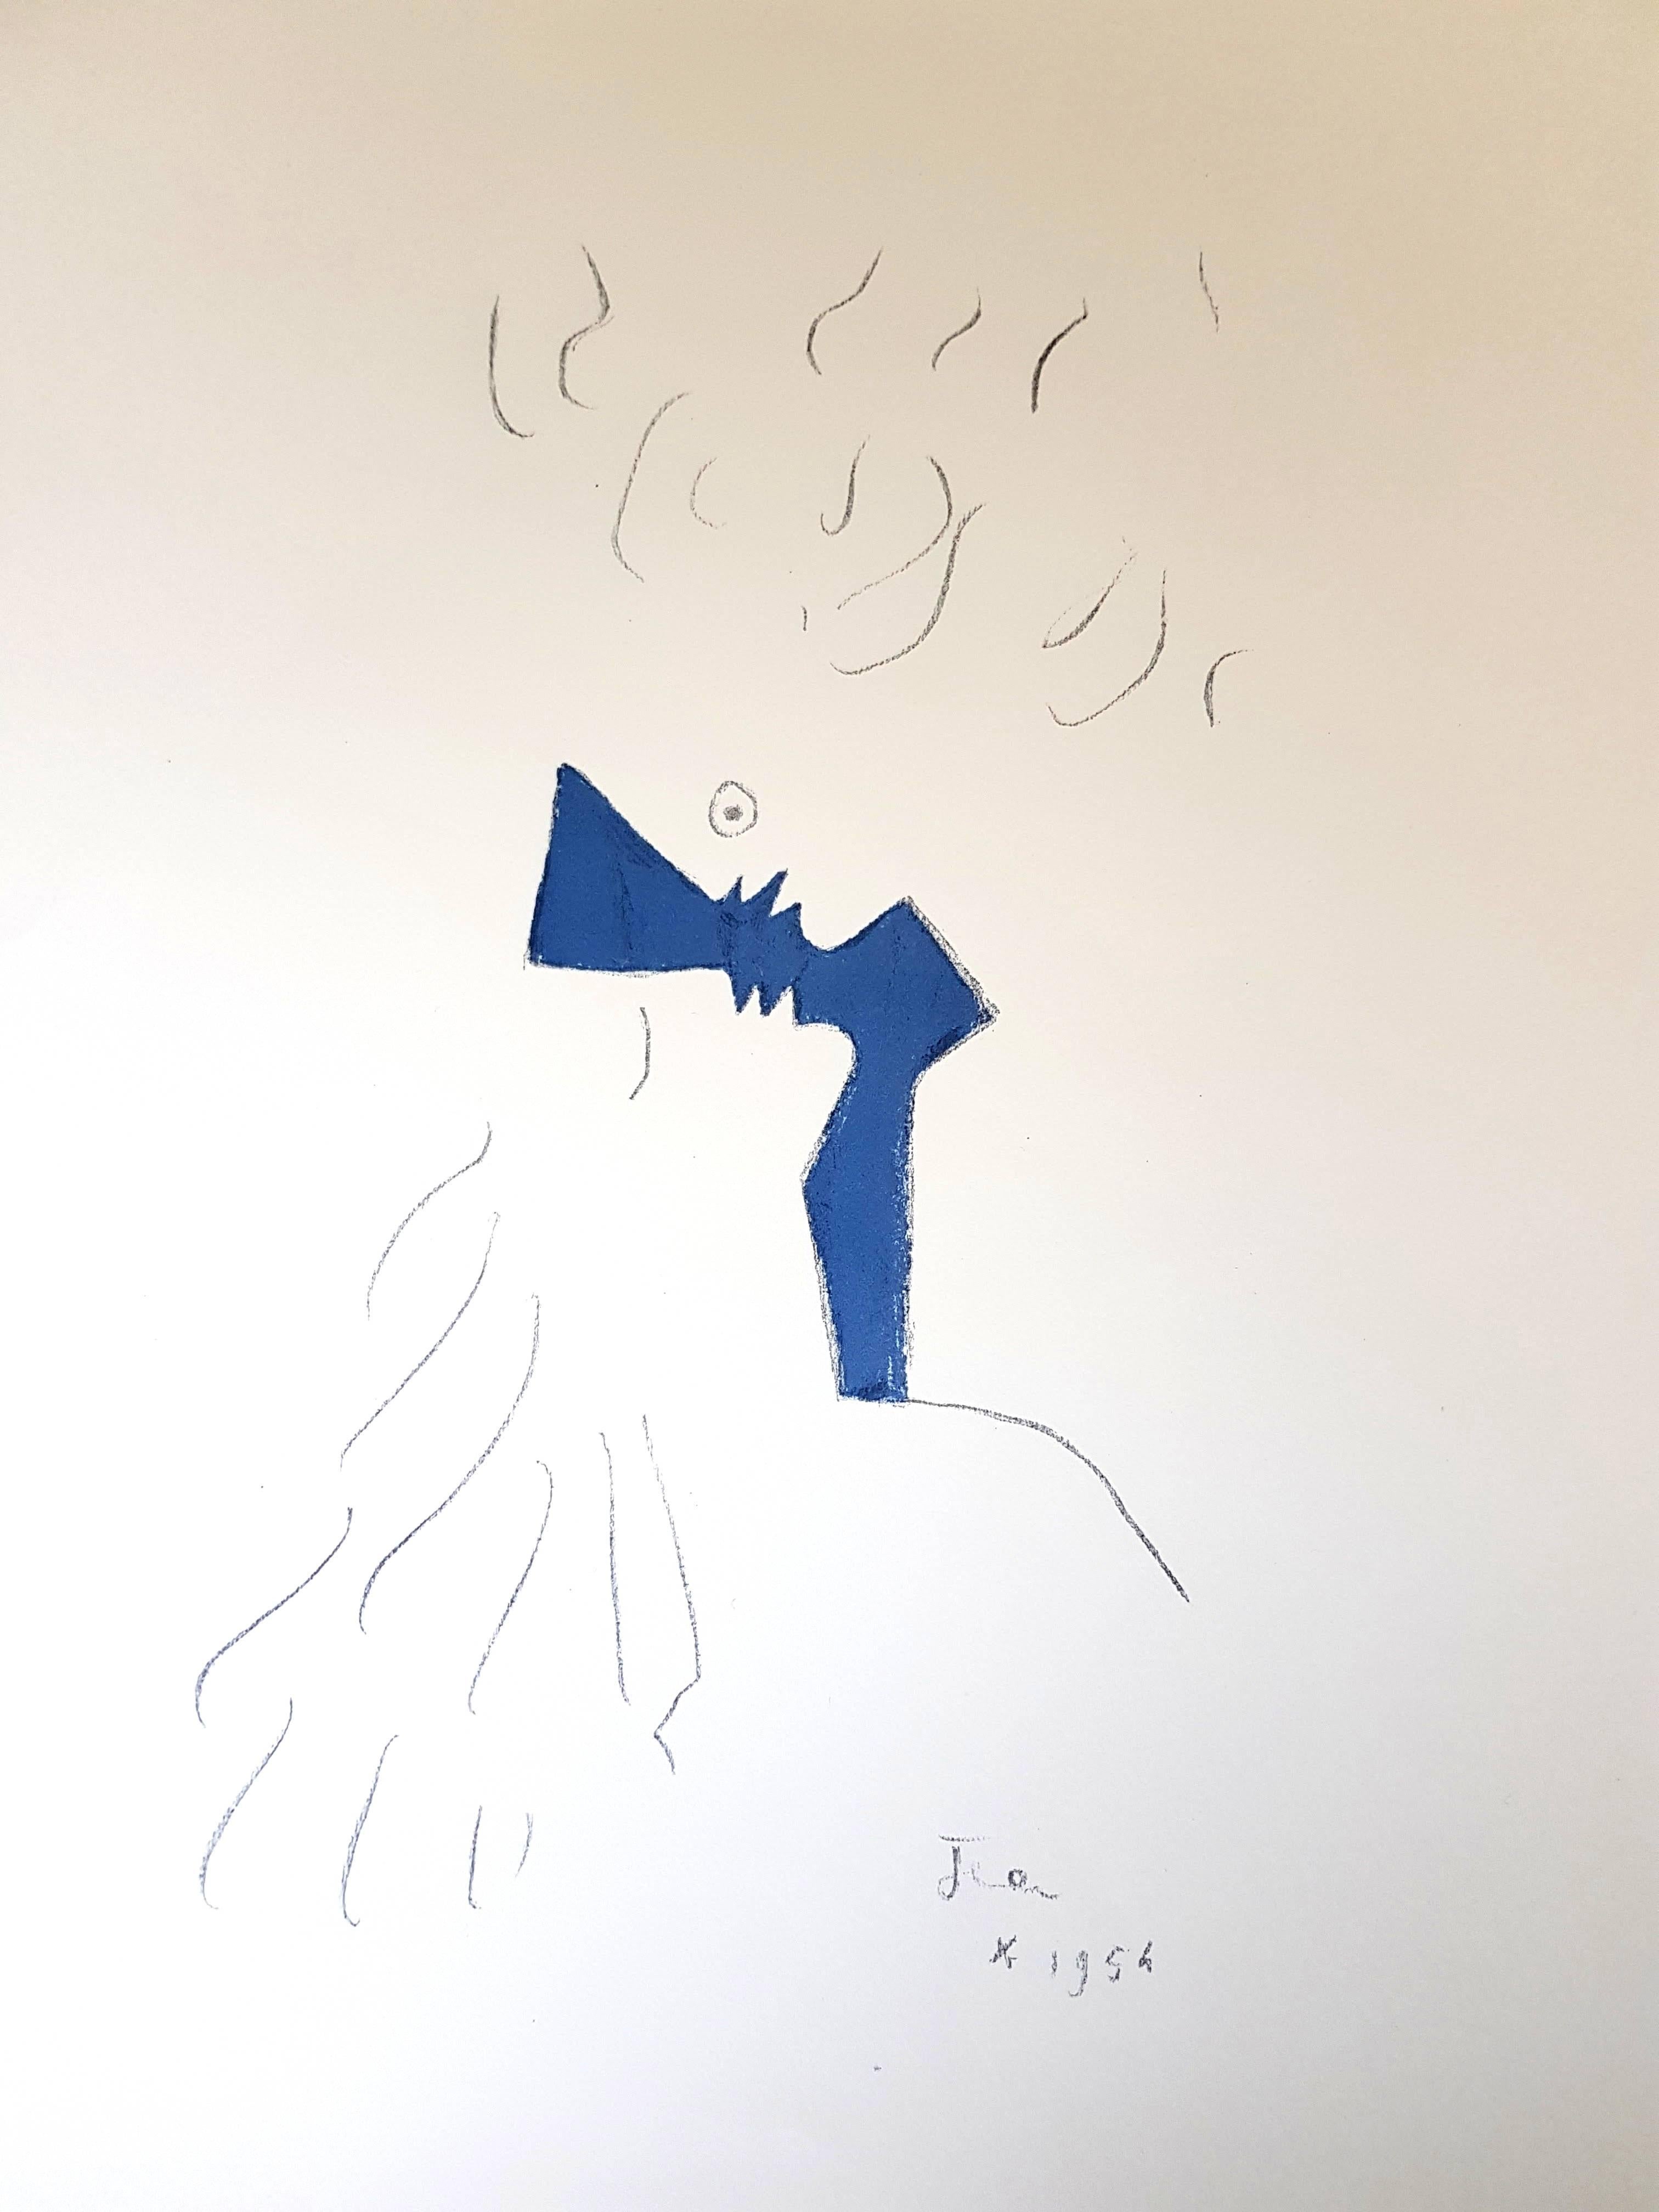 Jean Cocteau - Unter dem Feuermantel - Liebespaar - Original Lithographie
In der Platte signiert "Jean" und in der Platte datiert 1954.
Joseph Forêt-Ausgaben
Abmessungen: 41 x 33 cm
Vellum-Papier.
Auflage: 227